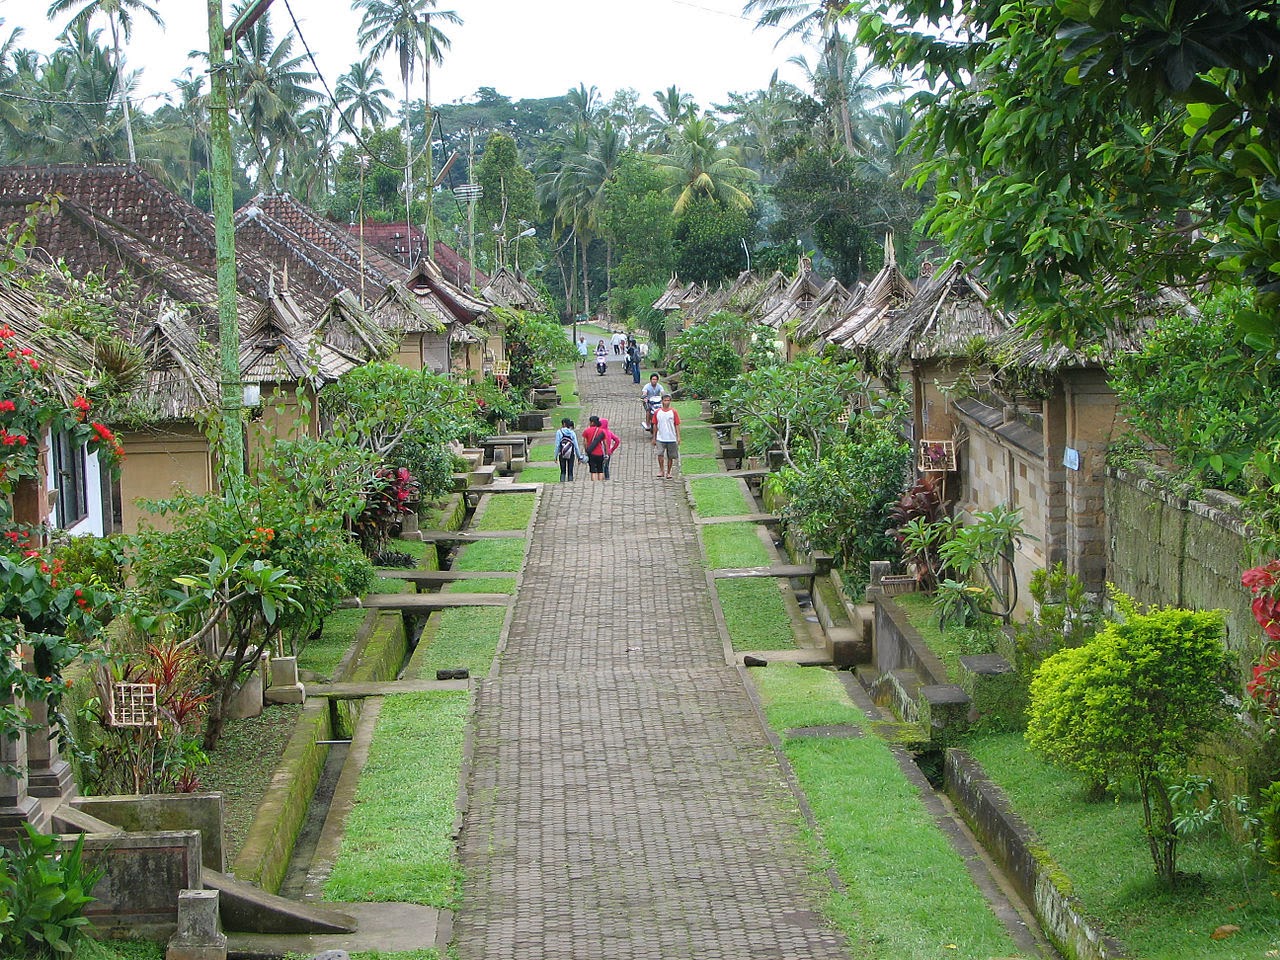 Indigenous Penglipuran Village